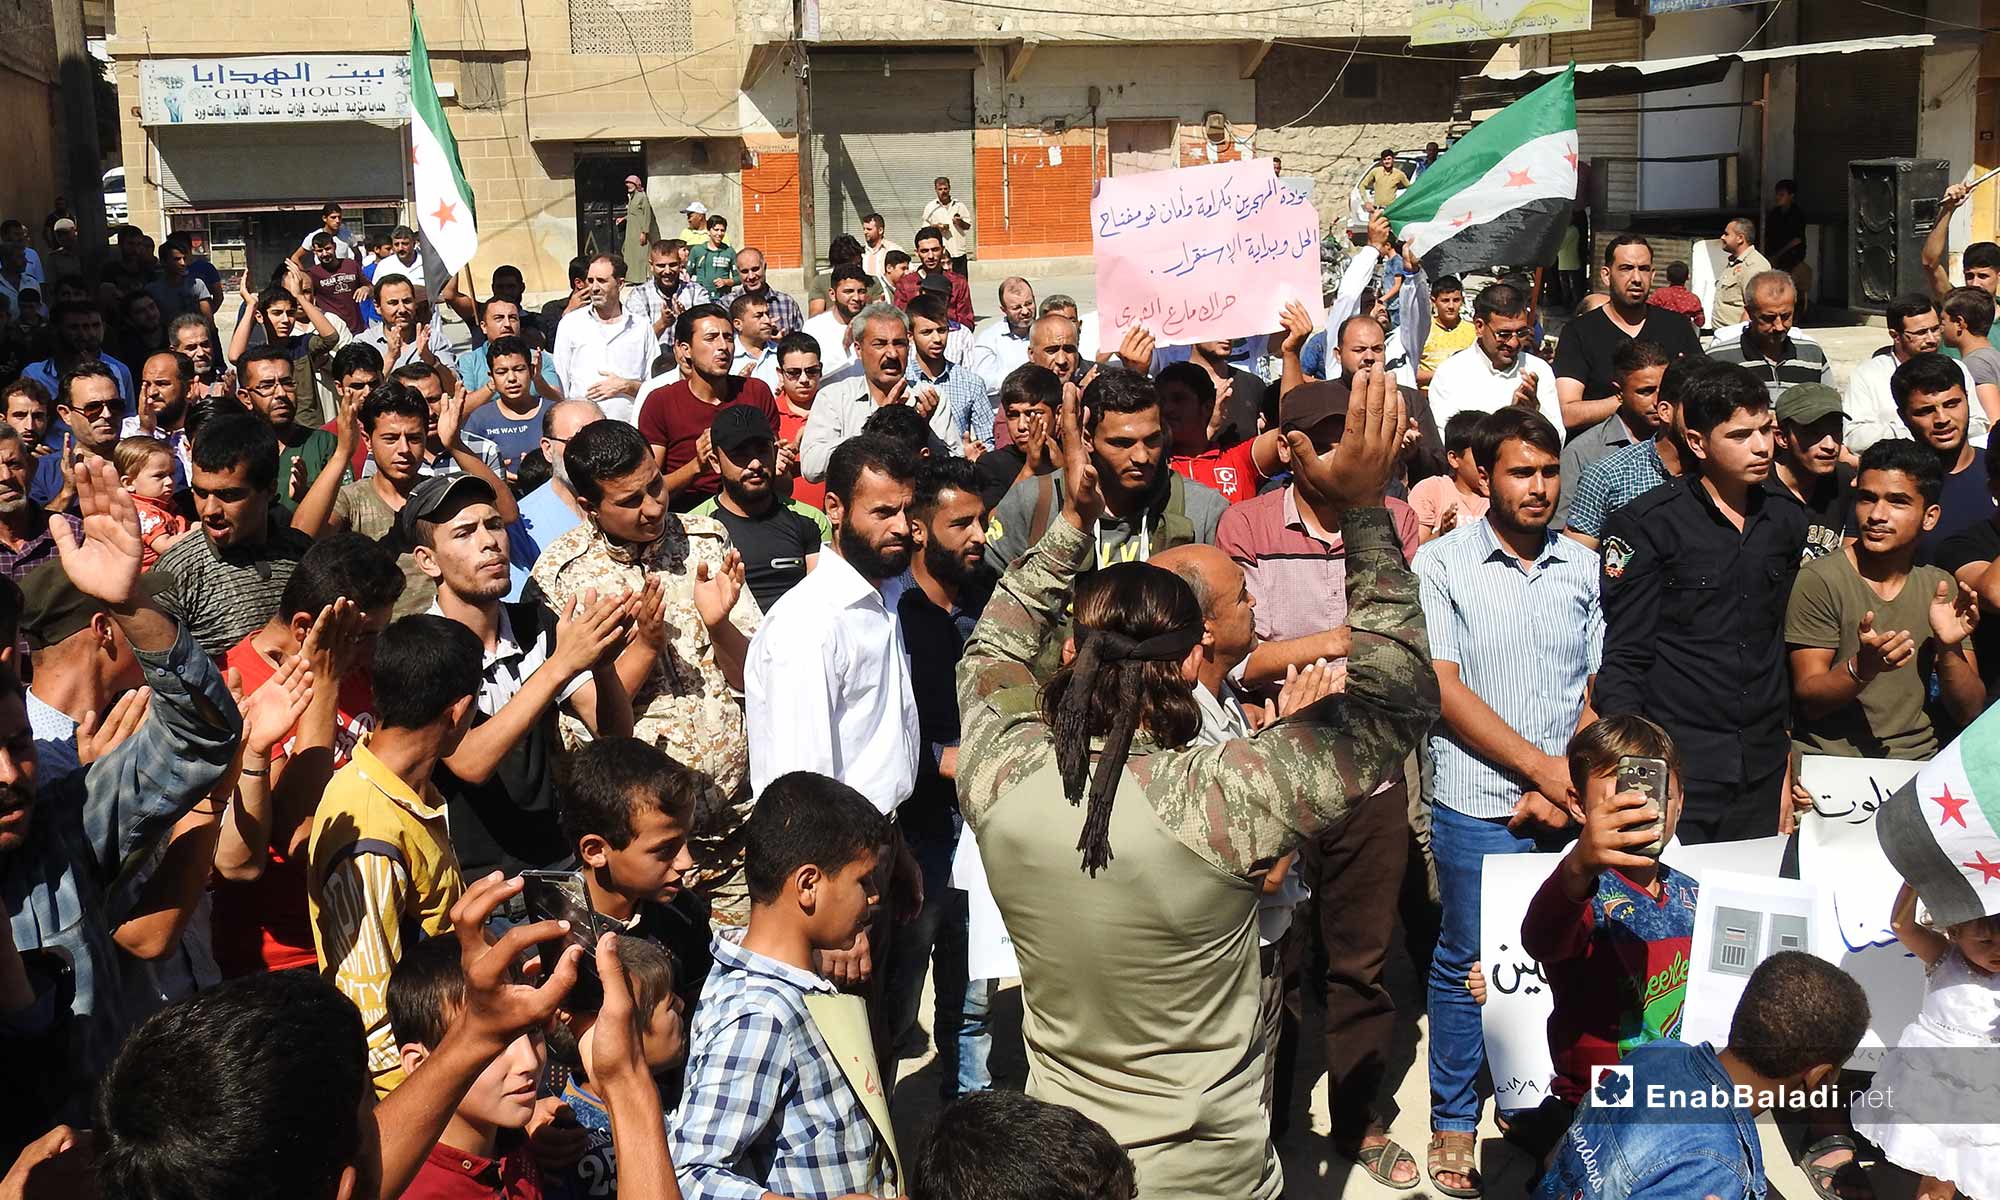 مظاهرات في ريف حلب تطالب بإخراج المعتقلين من سجون النظام - 28 من أيلول 2018 (عنب بلدي)